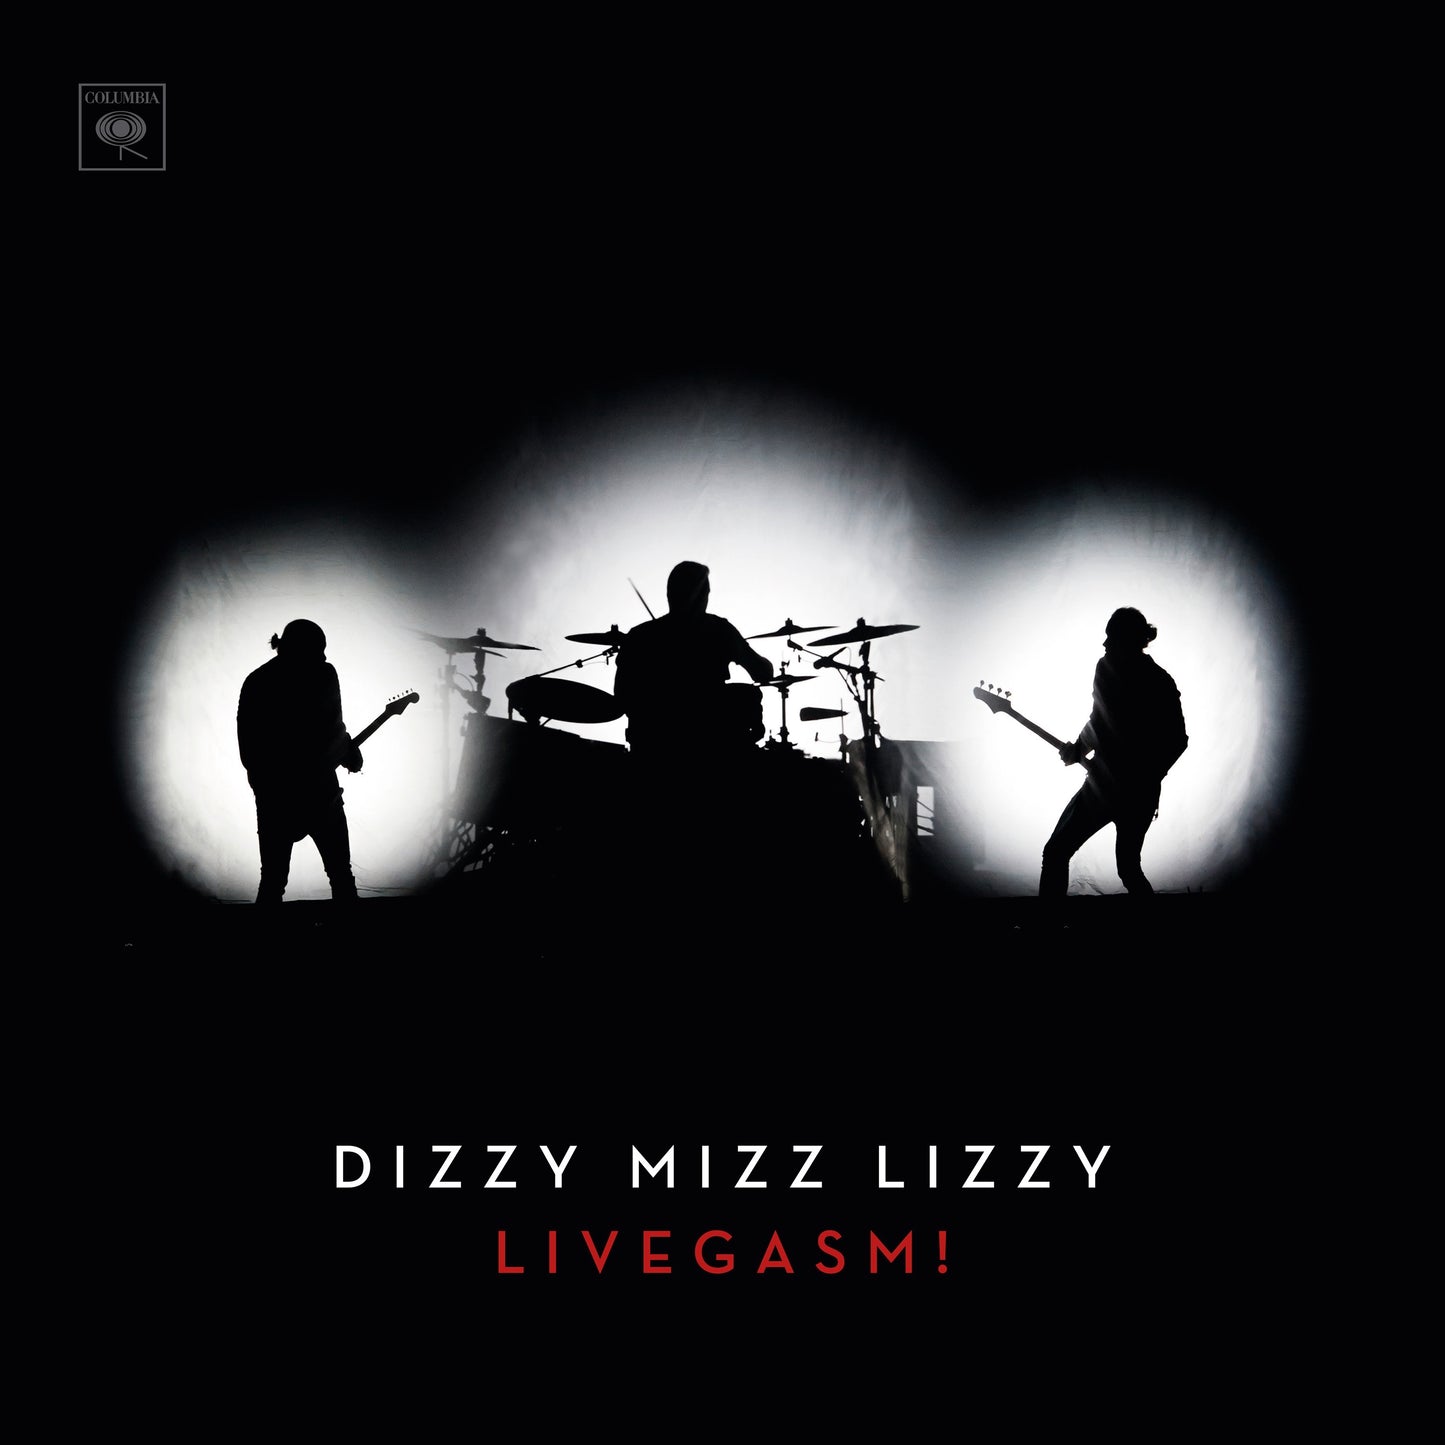 Dizzy Mizz Lizzy - ’Livegasm!’